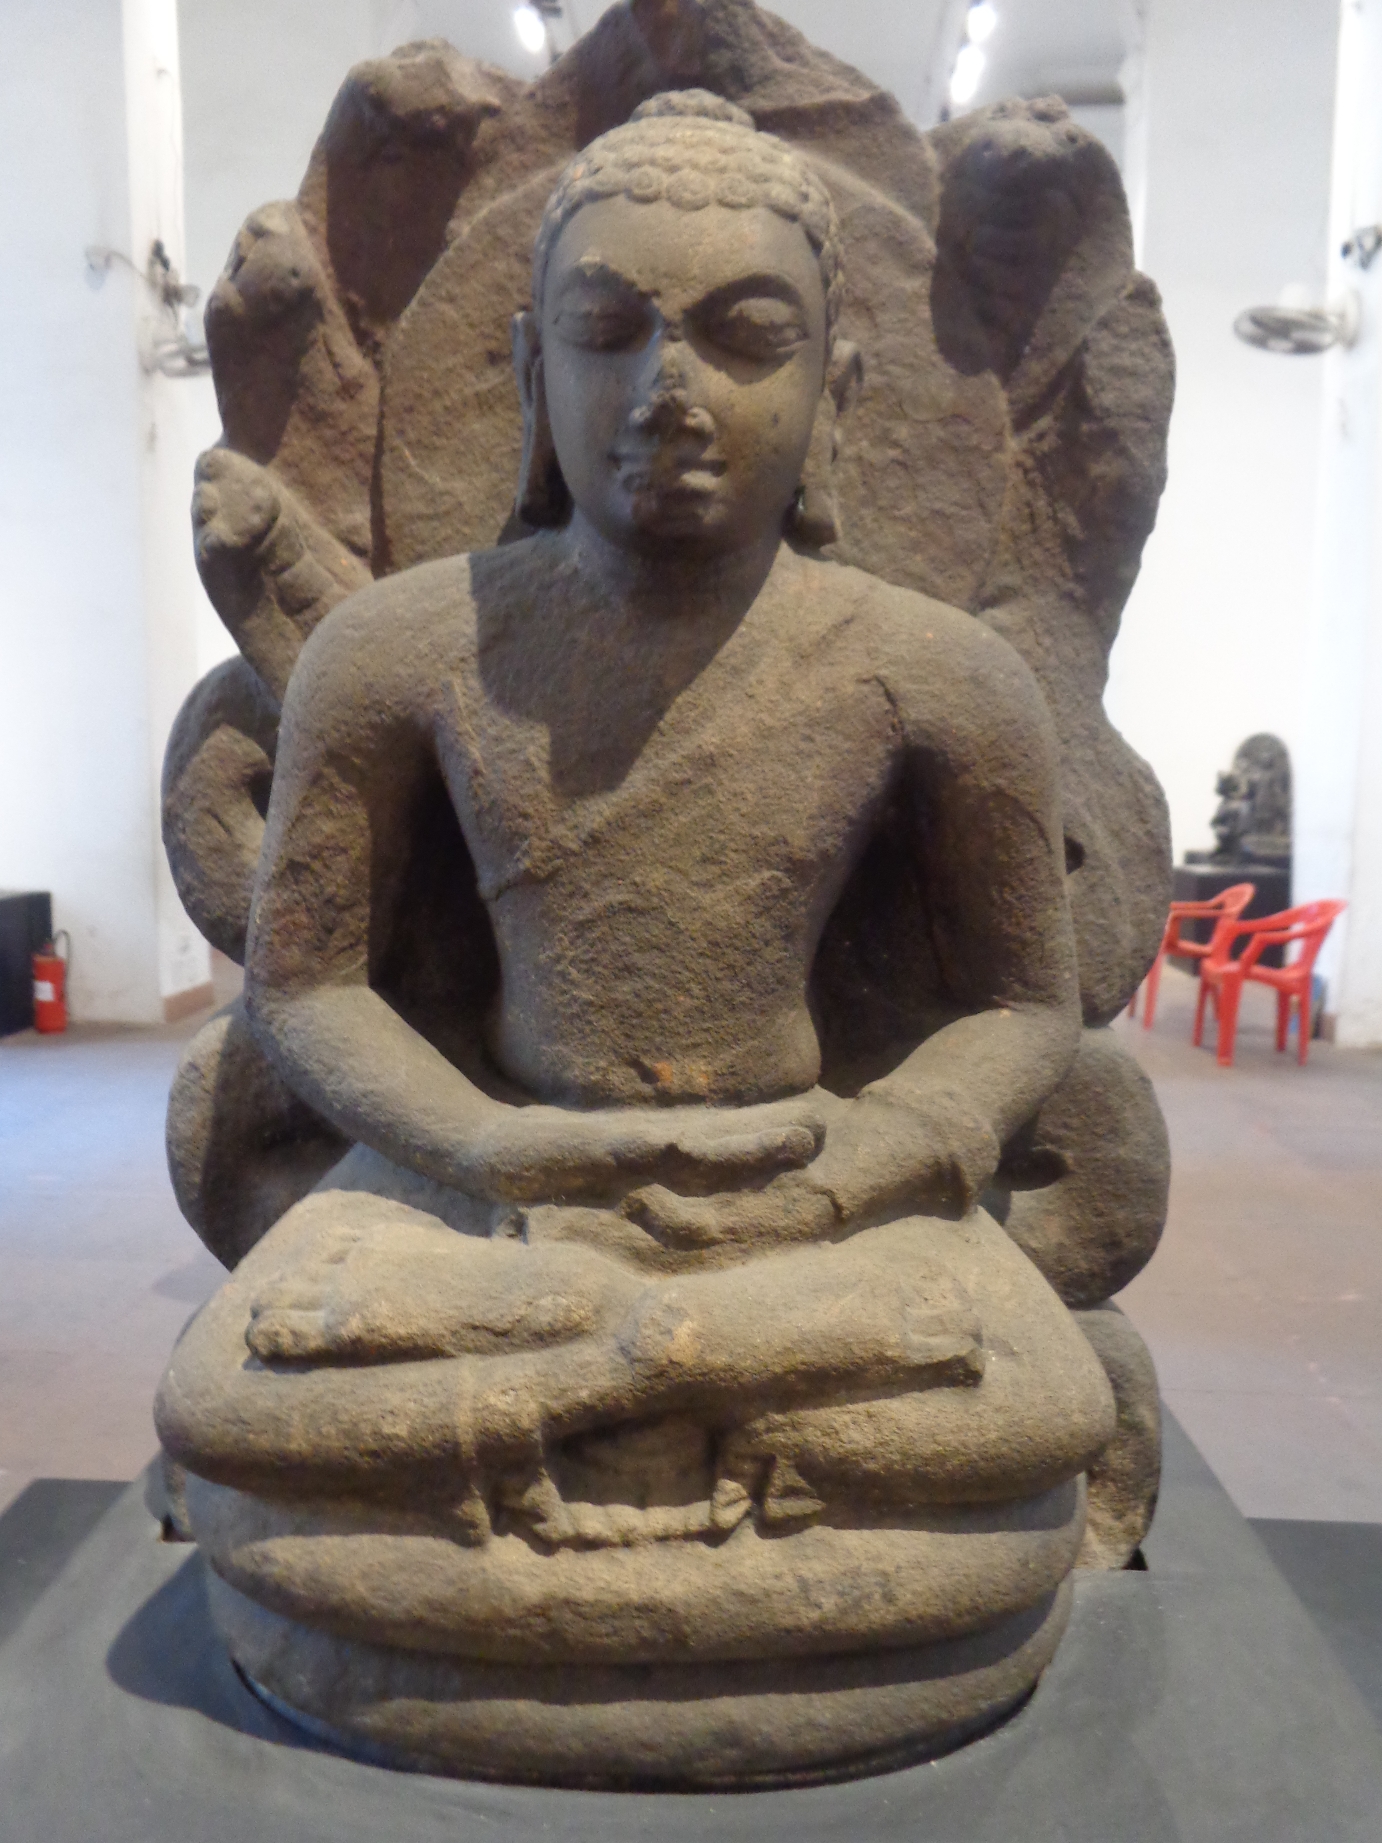 Buddha in meditazione